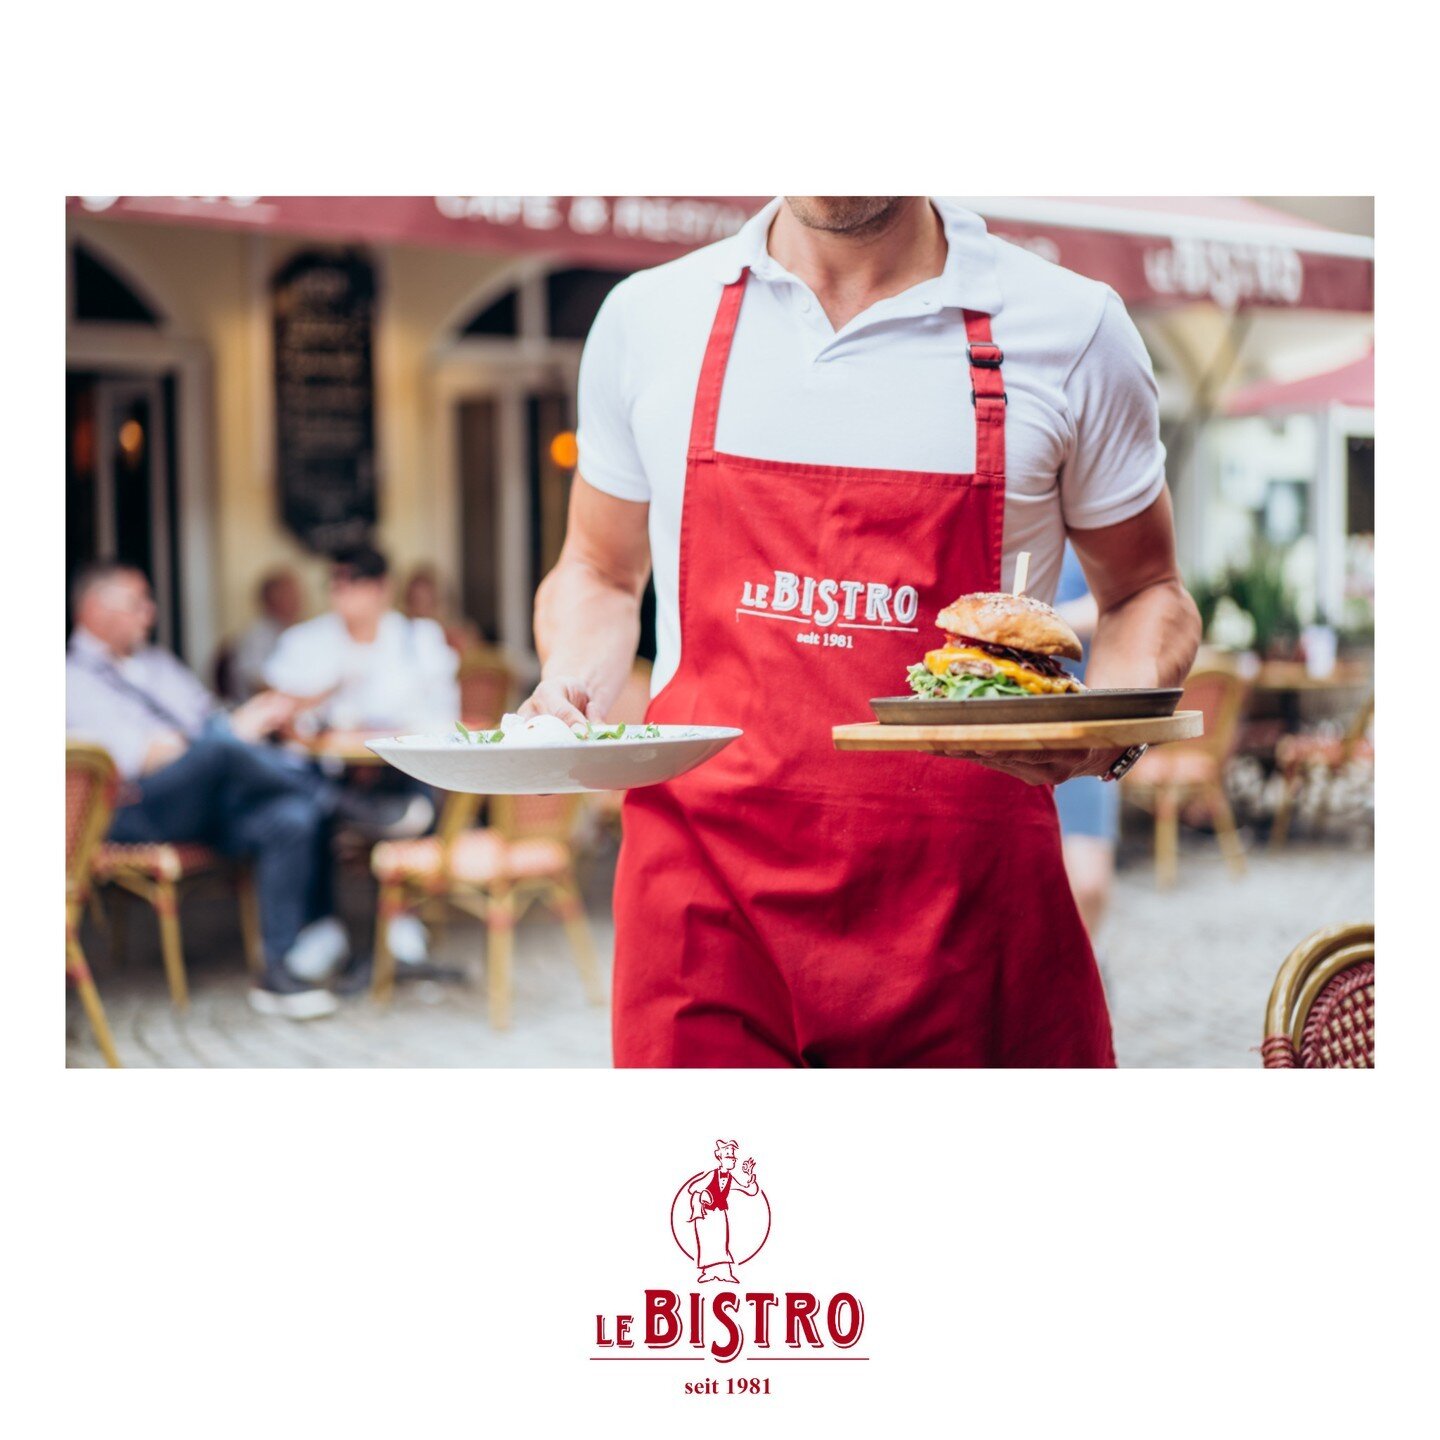 𝑪𝑶𝑴𝑰𝑵𝑮 𝒀𝑶𝑼𝑹 𝑾𝑨𝒀 !

Eine gute Wahl treffen, bedient werden und vollends genie&szlig;en 🥰

📸 @unikat_circle
.
.
.
#lebistro #lebistrobadenbaden #badenbaden #restaurant #finedining #bistro #schwarzwald #foodie #foodlover #tasty  #gastrono